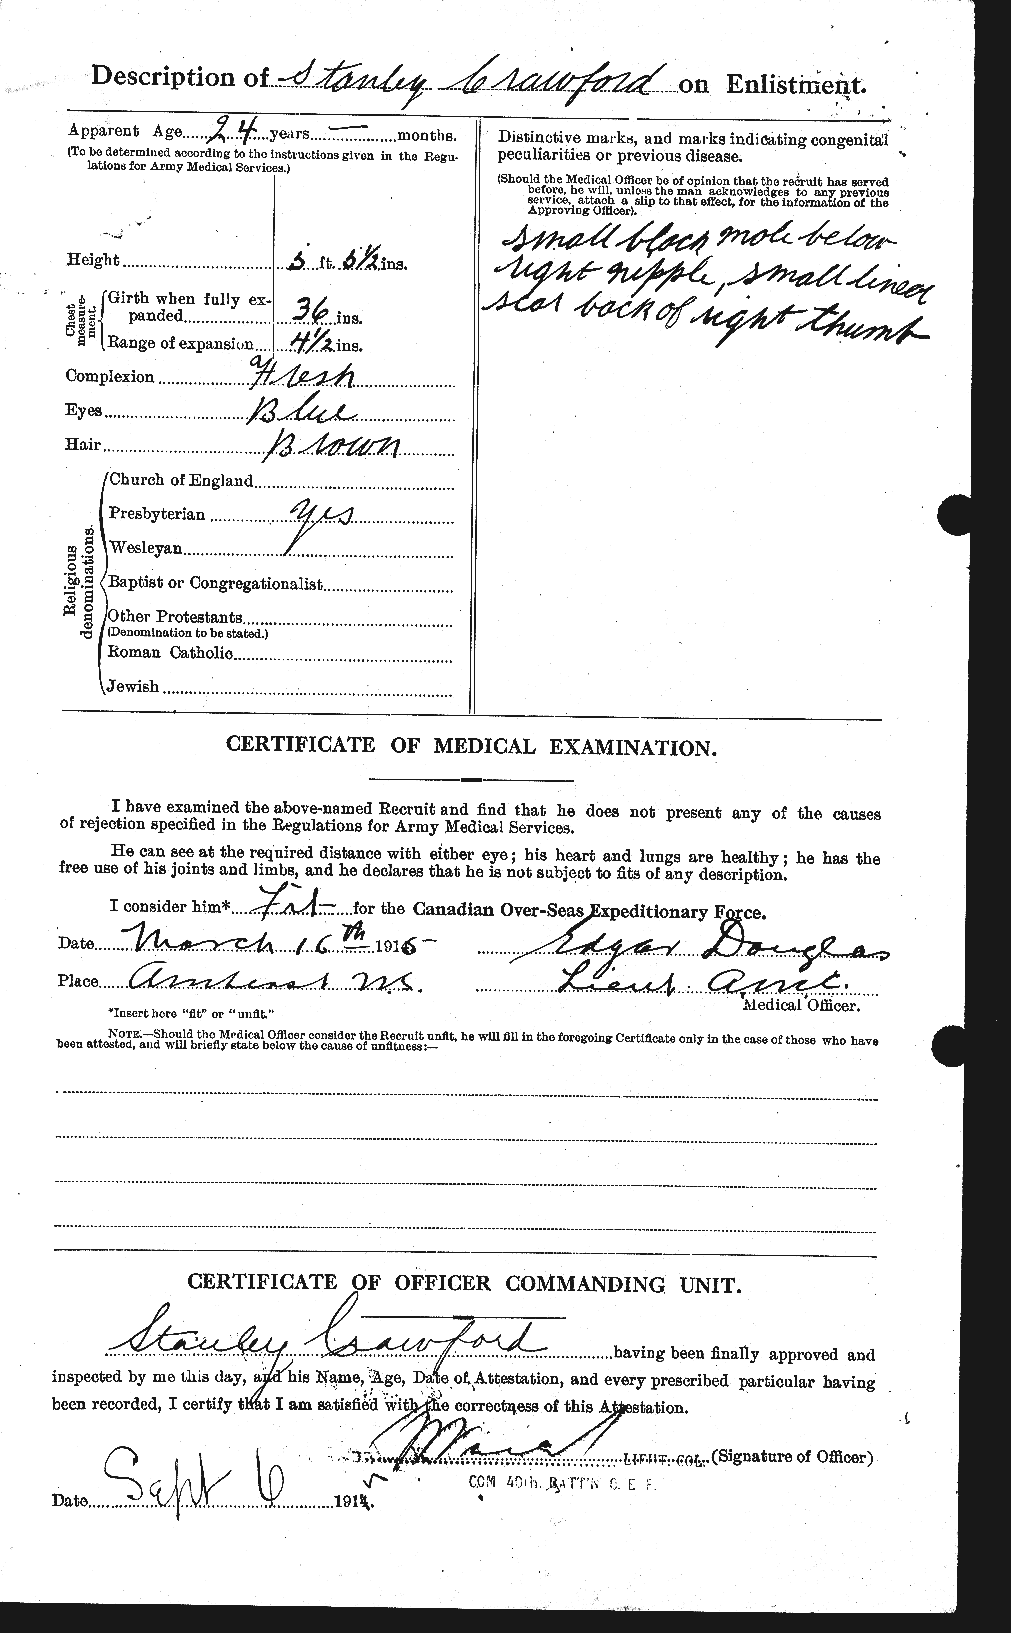 Dossiers du Personnel de la Première Guerre mondiale - CEC 061372b